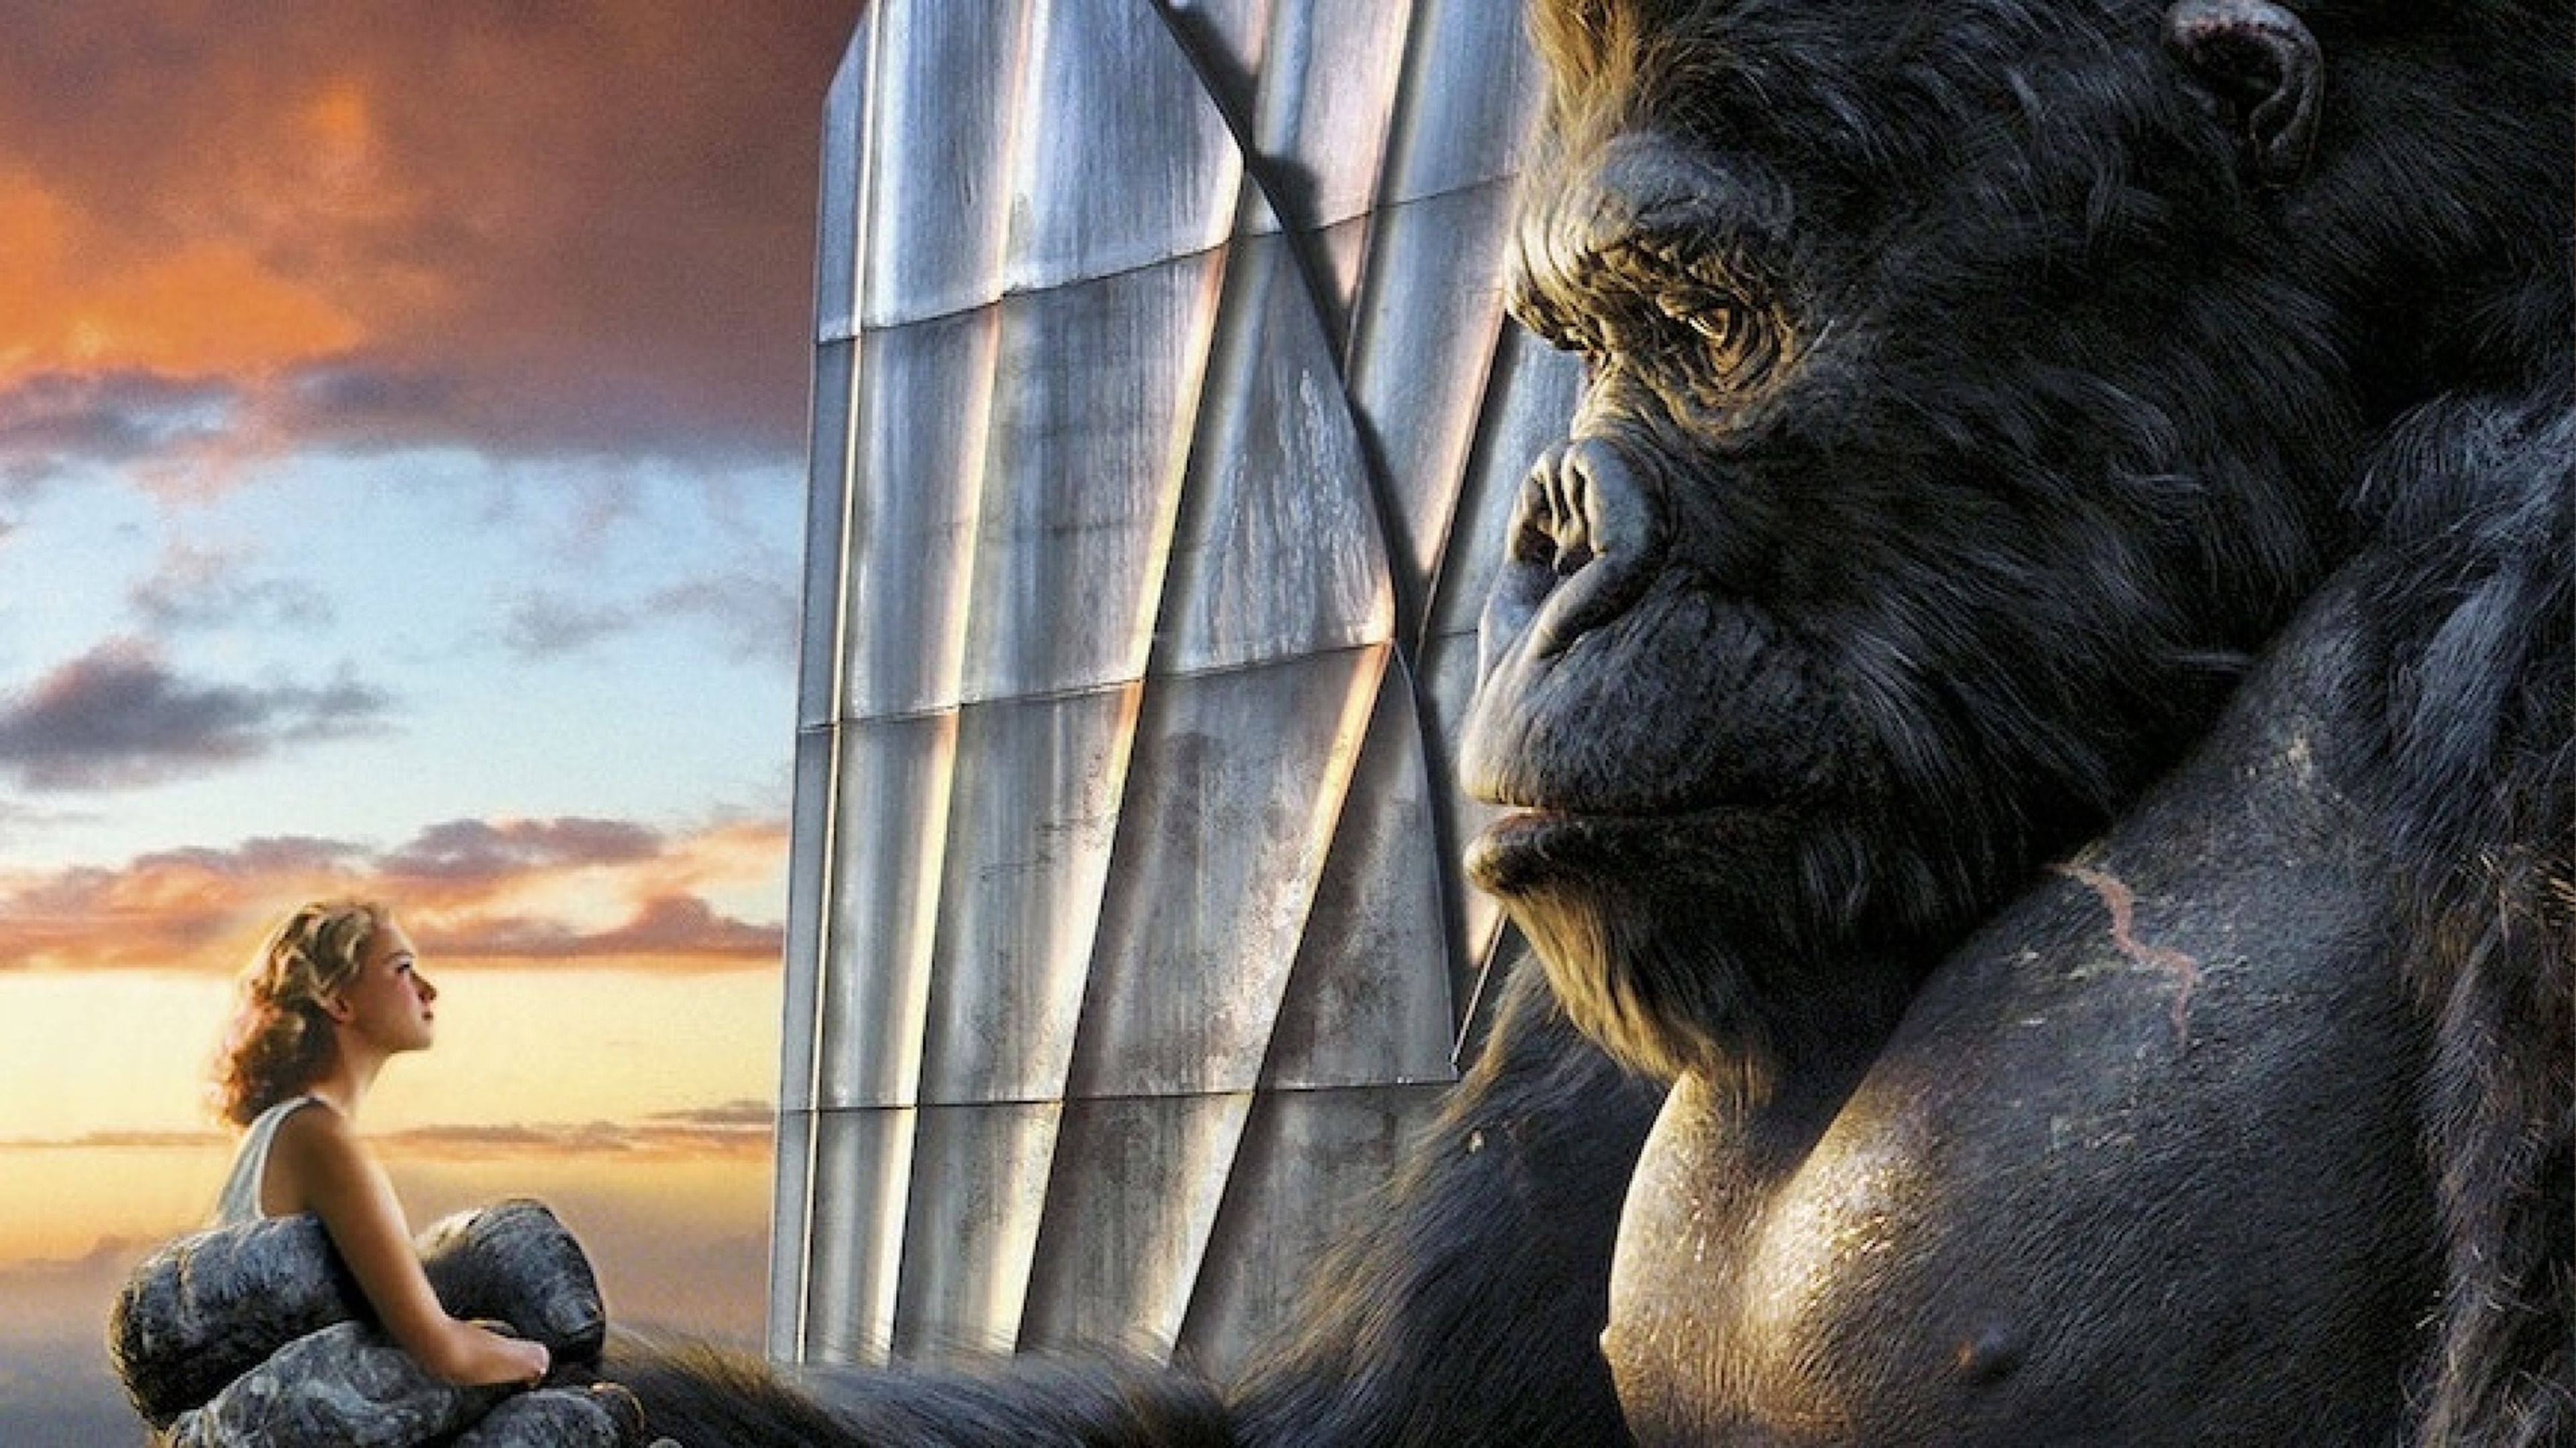 King Kong (2005) Peter Jackson